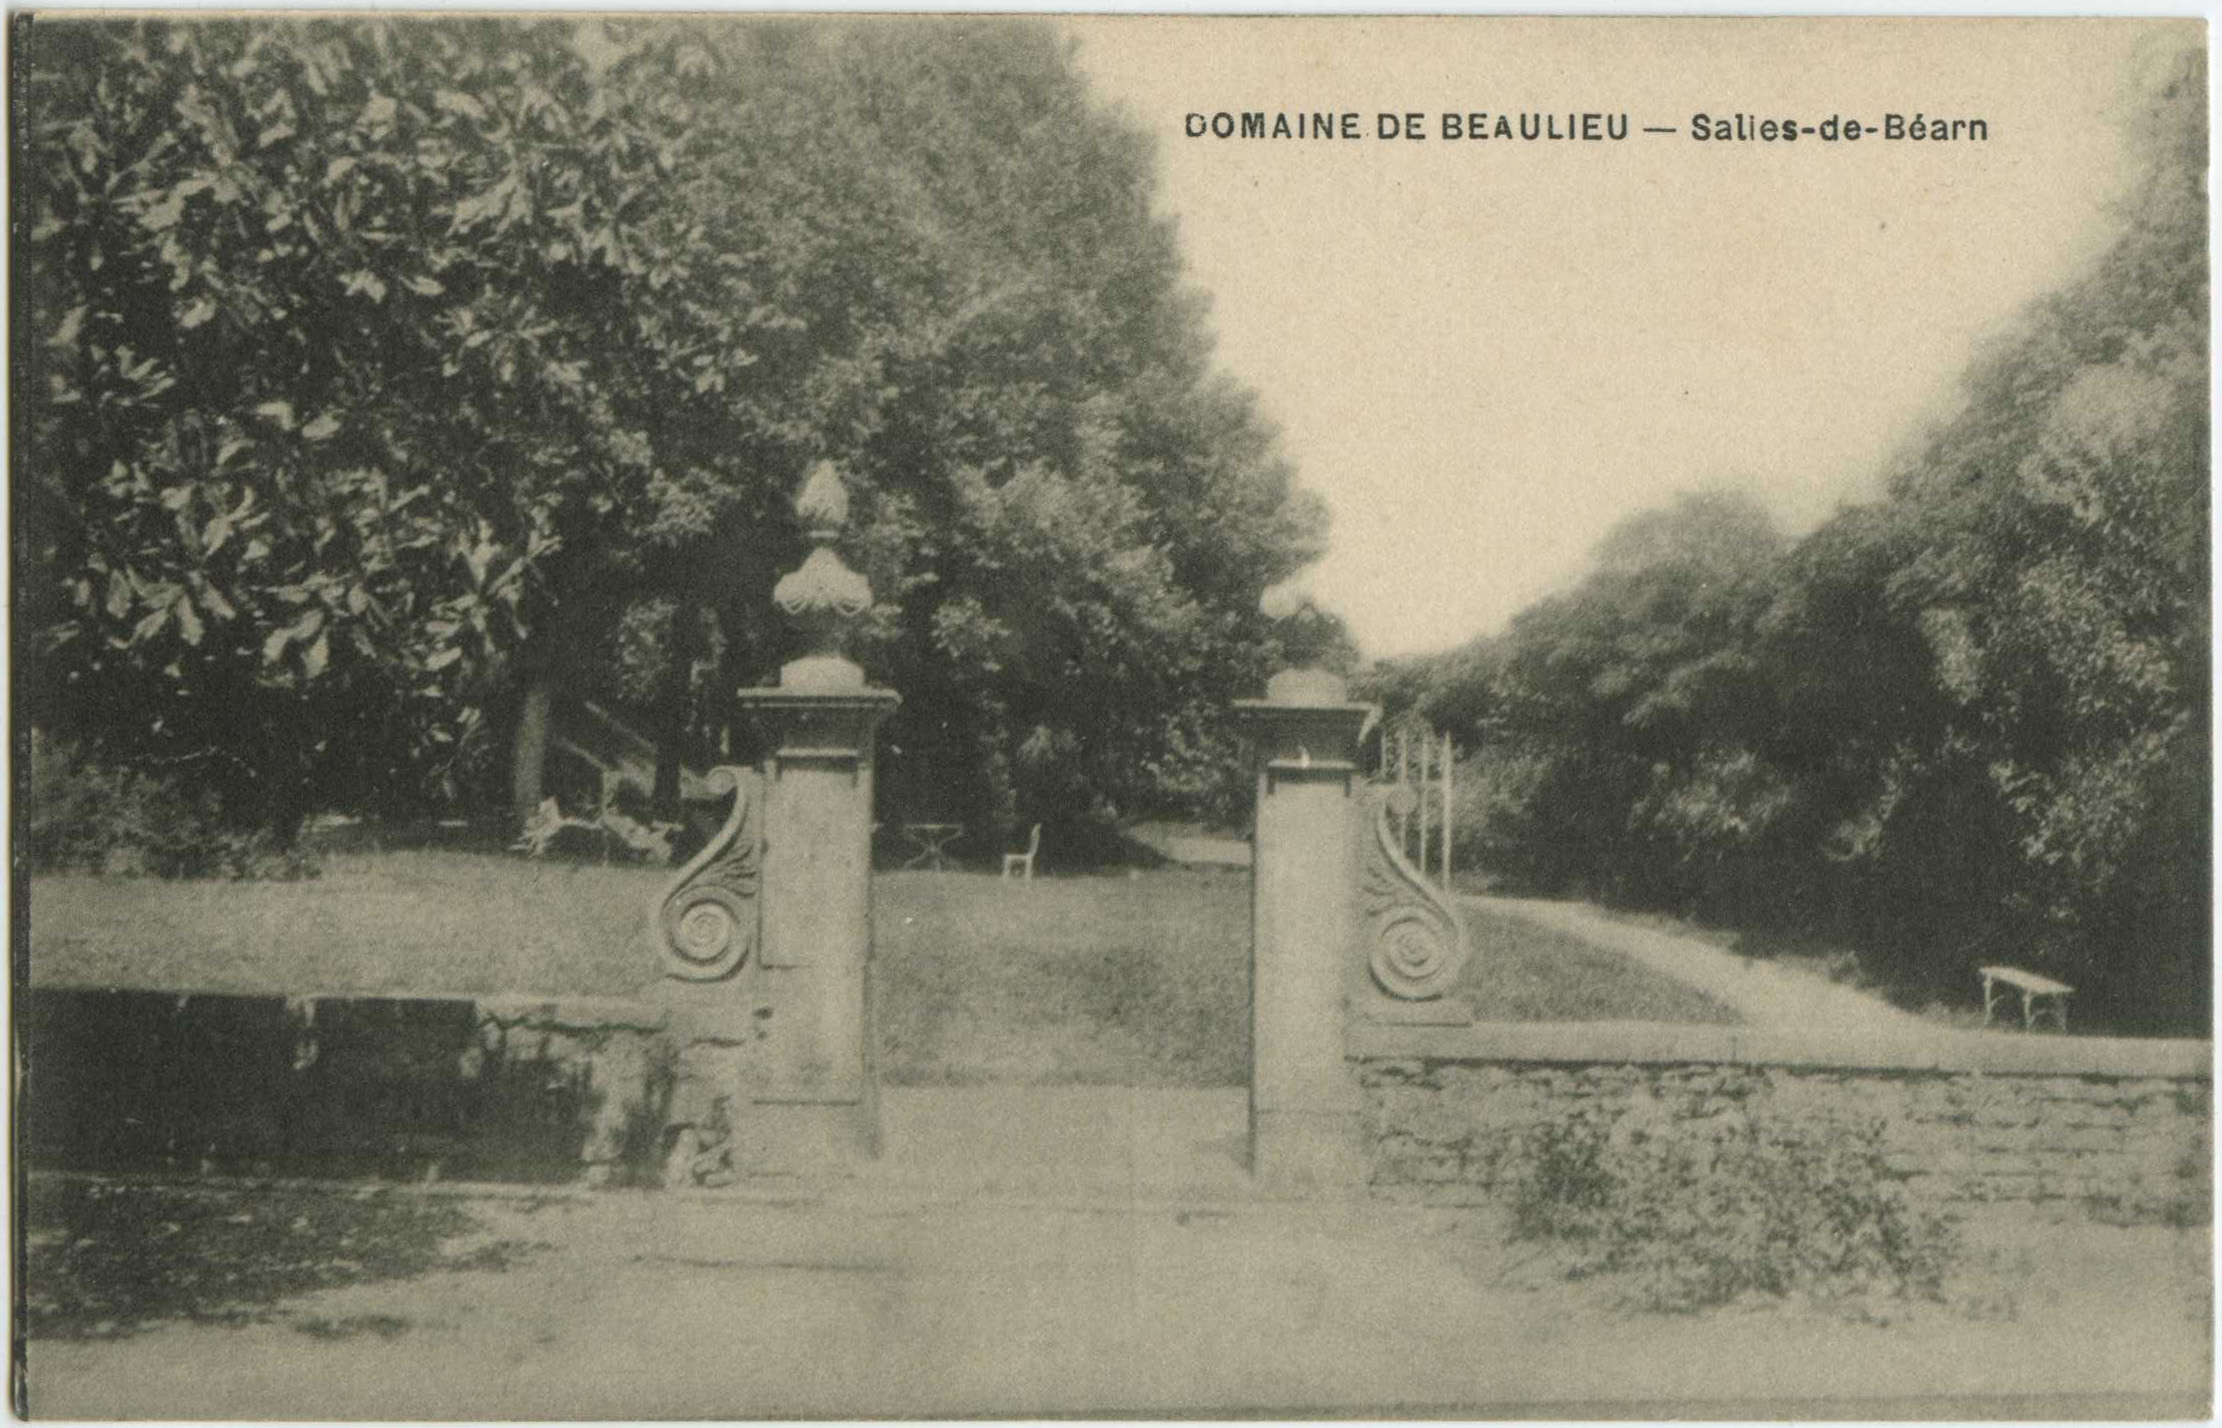 Salies-de-Béarn - DOMAINE DE BEAULIEU